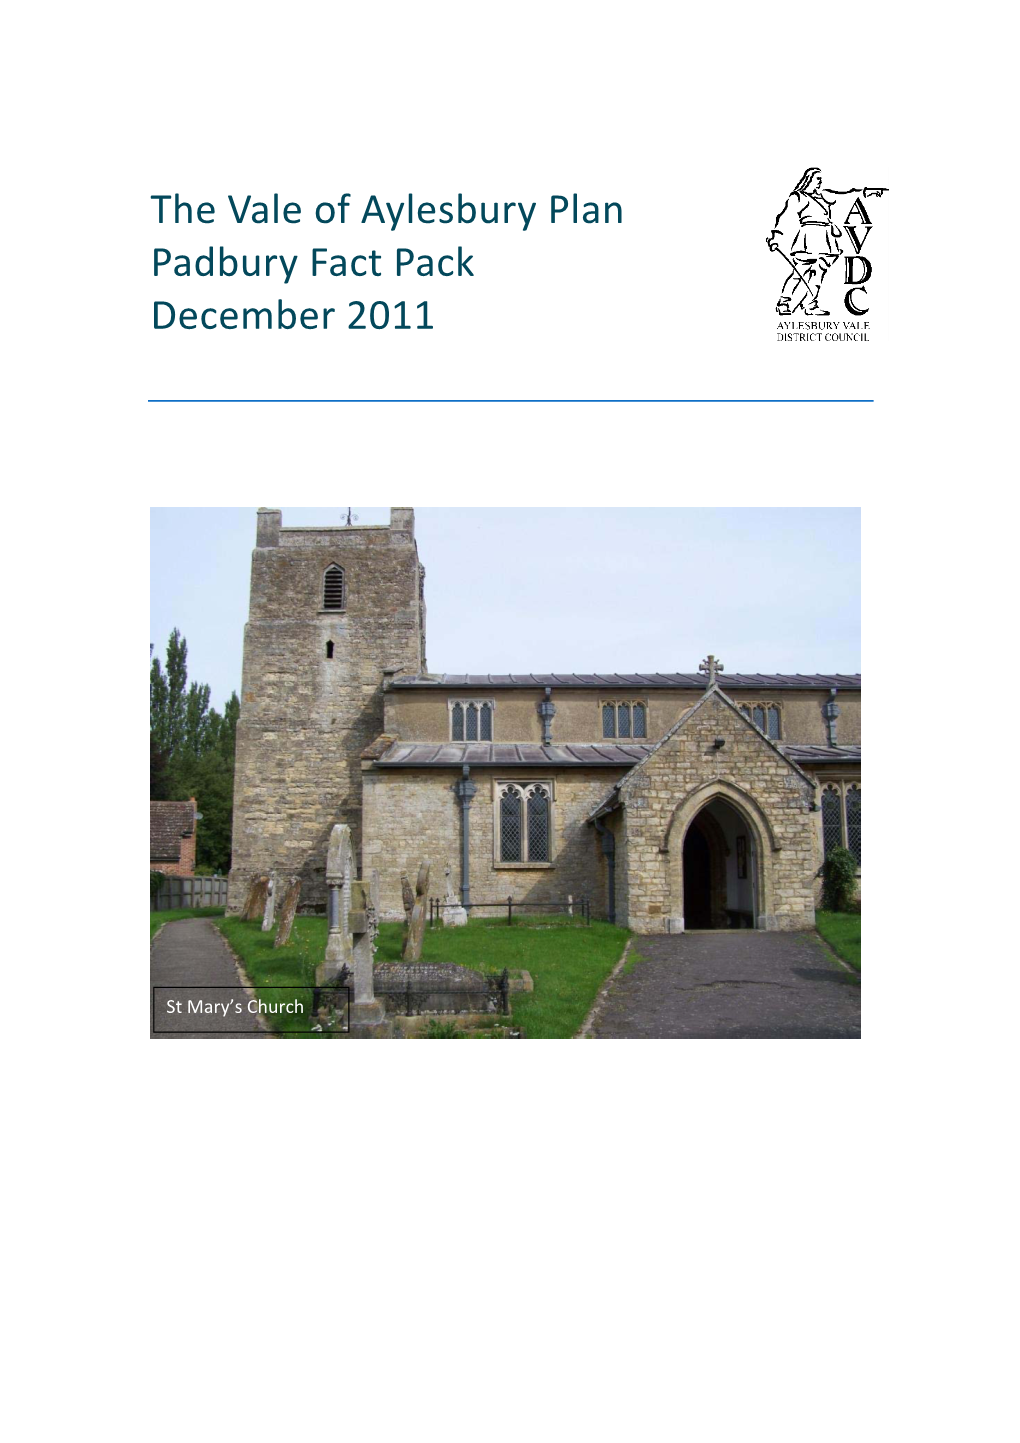 The Vale of Aylesbury Plan Padbury Fact Pack December 2011